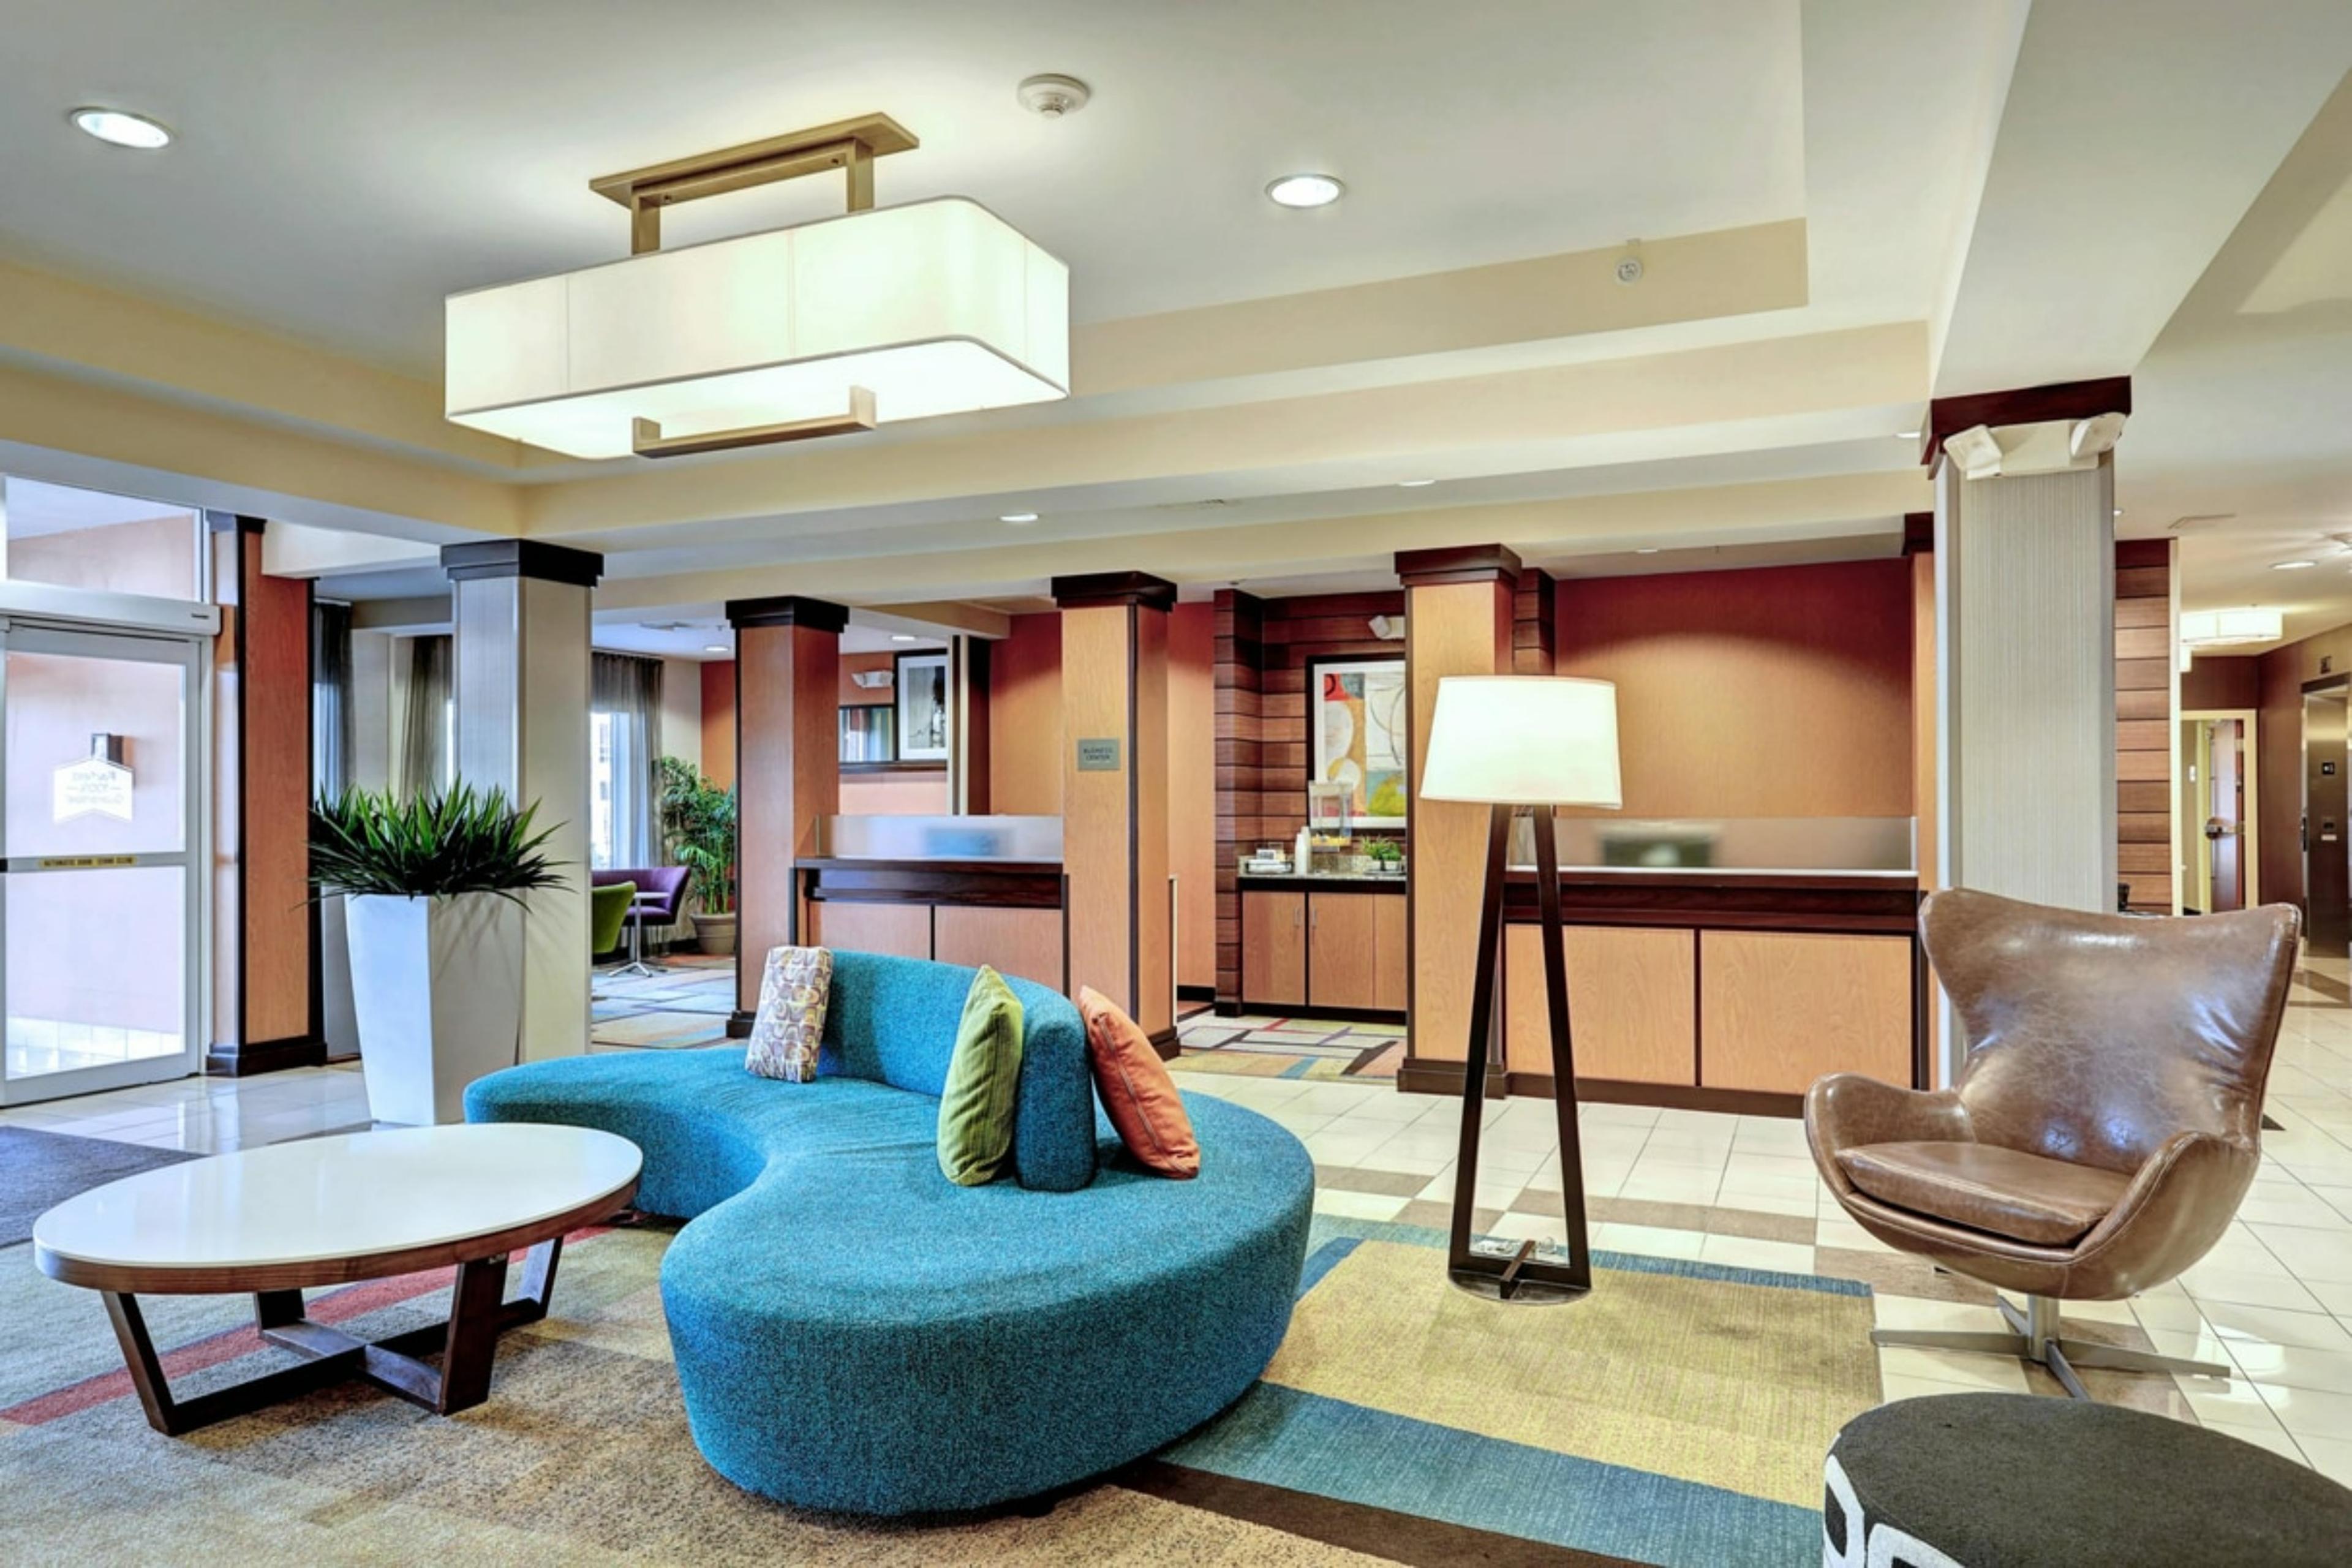 Fairfield Inn & Suites by Marriott Edison-South Plainfield